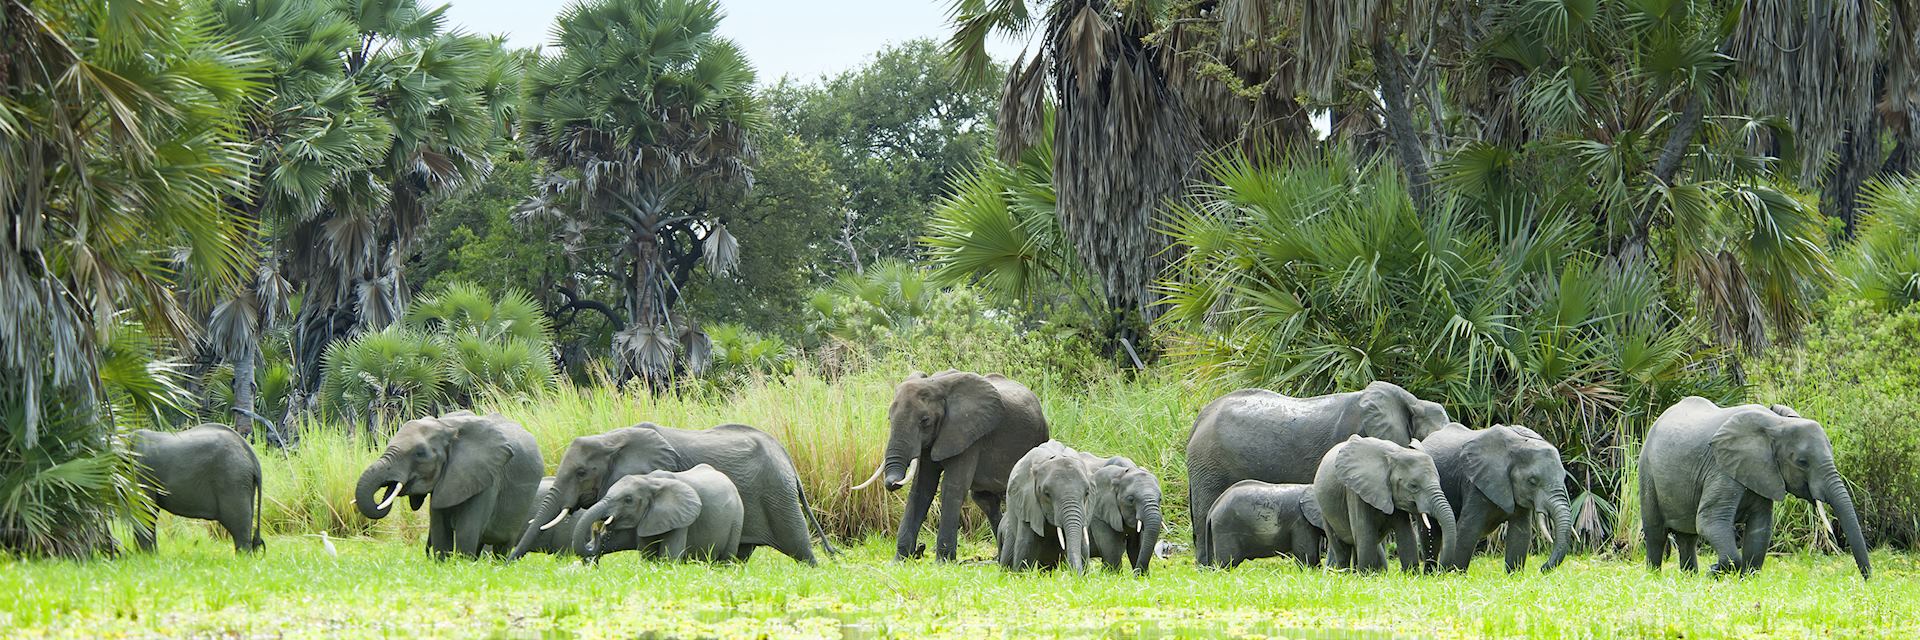 Elephant, Nyerere National Park